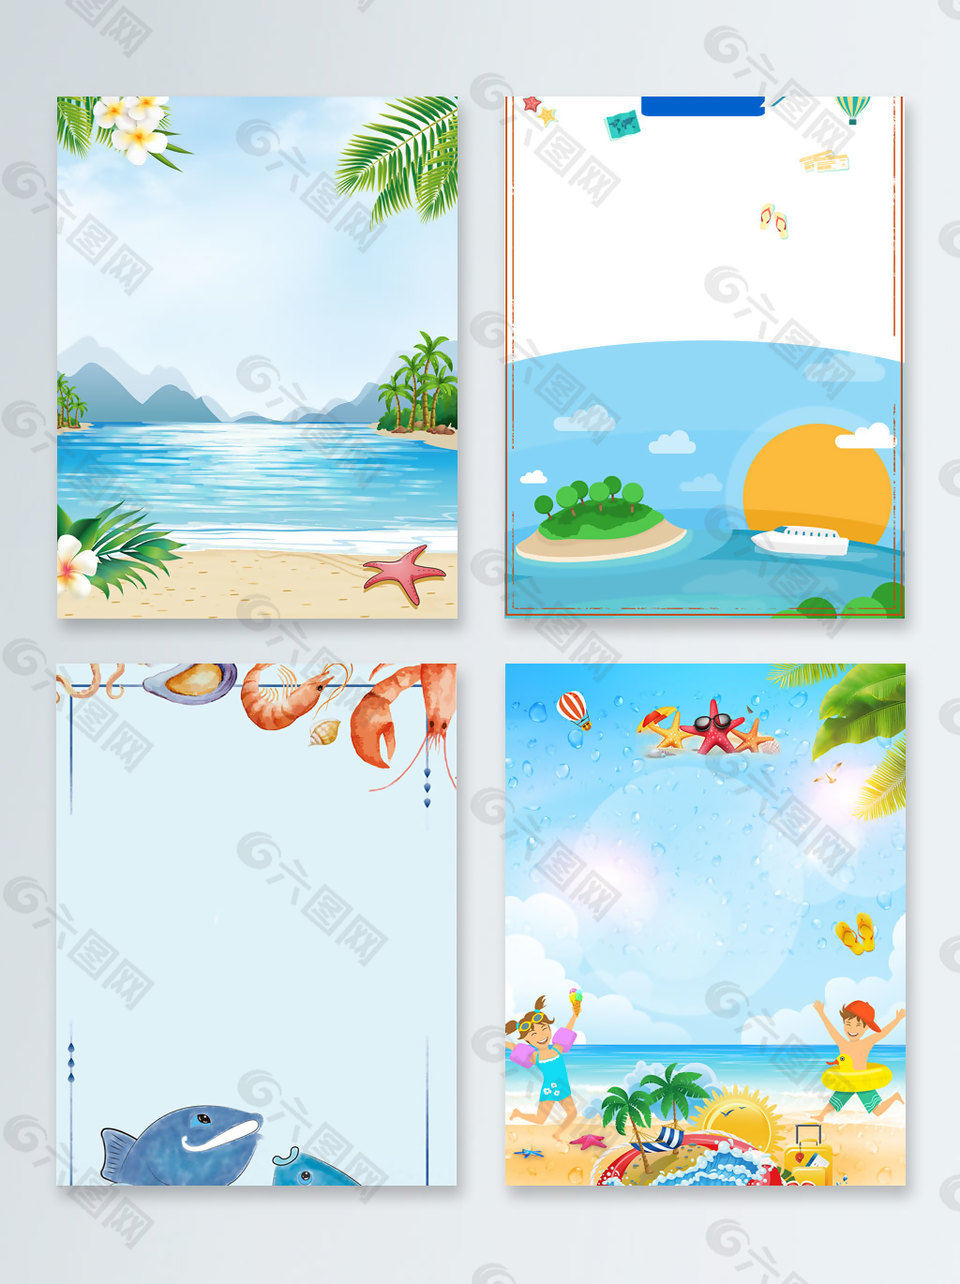 海边度假暑期夏日旅游广告背景